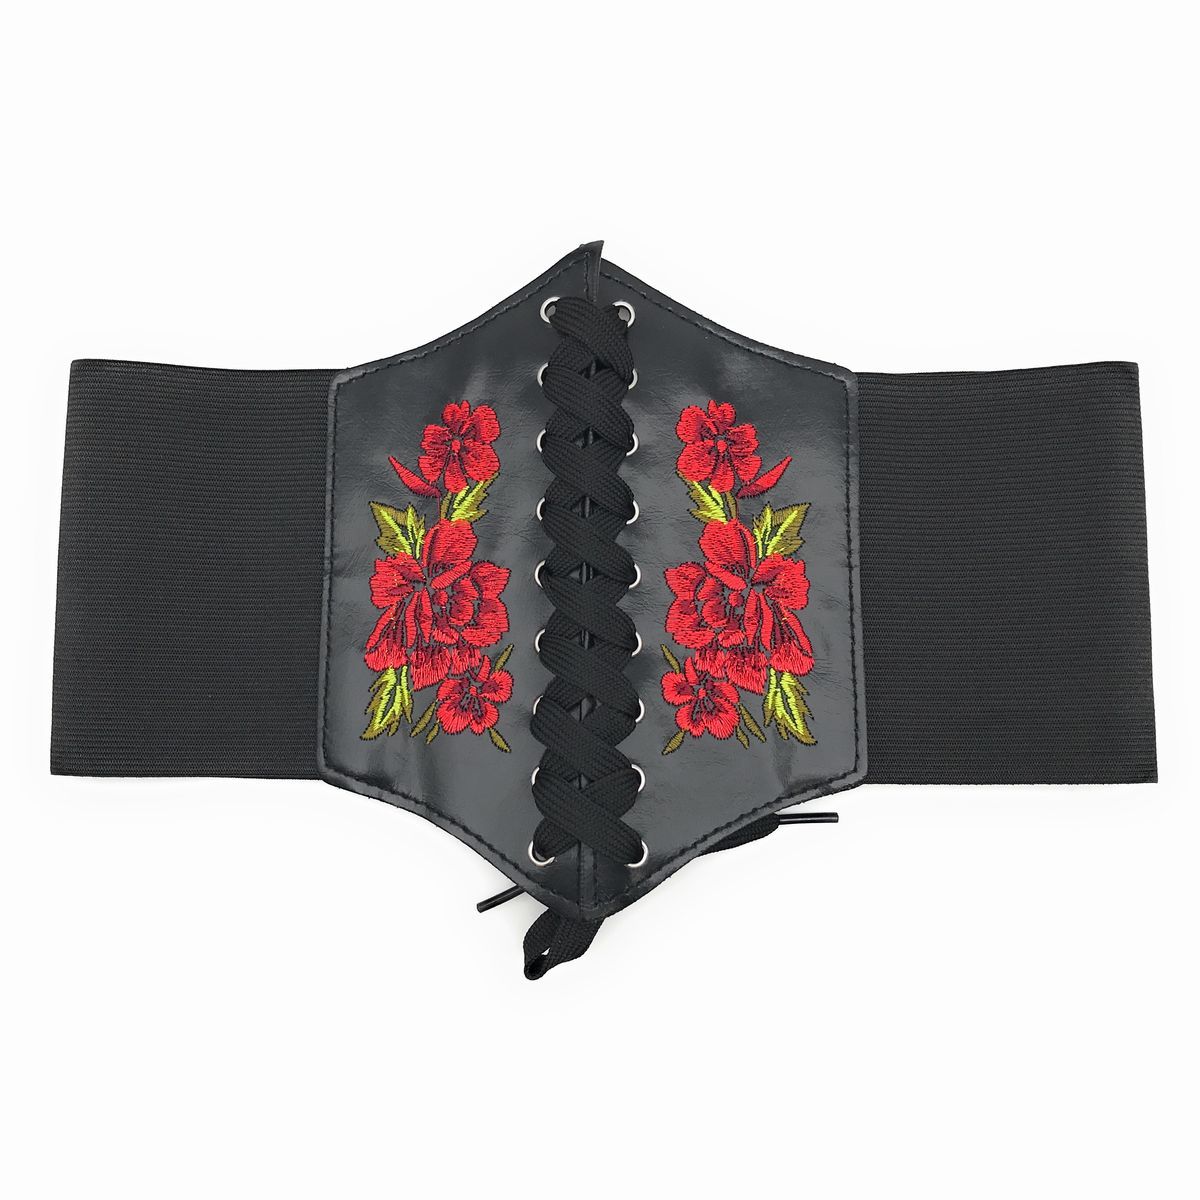 サッシュベルト 薔薇の刺繍 ゴム 幅広 編み上げ セクシー系_画像1